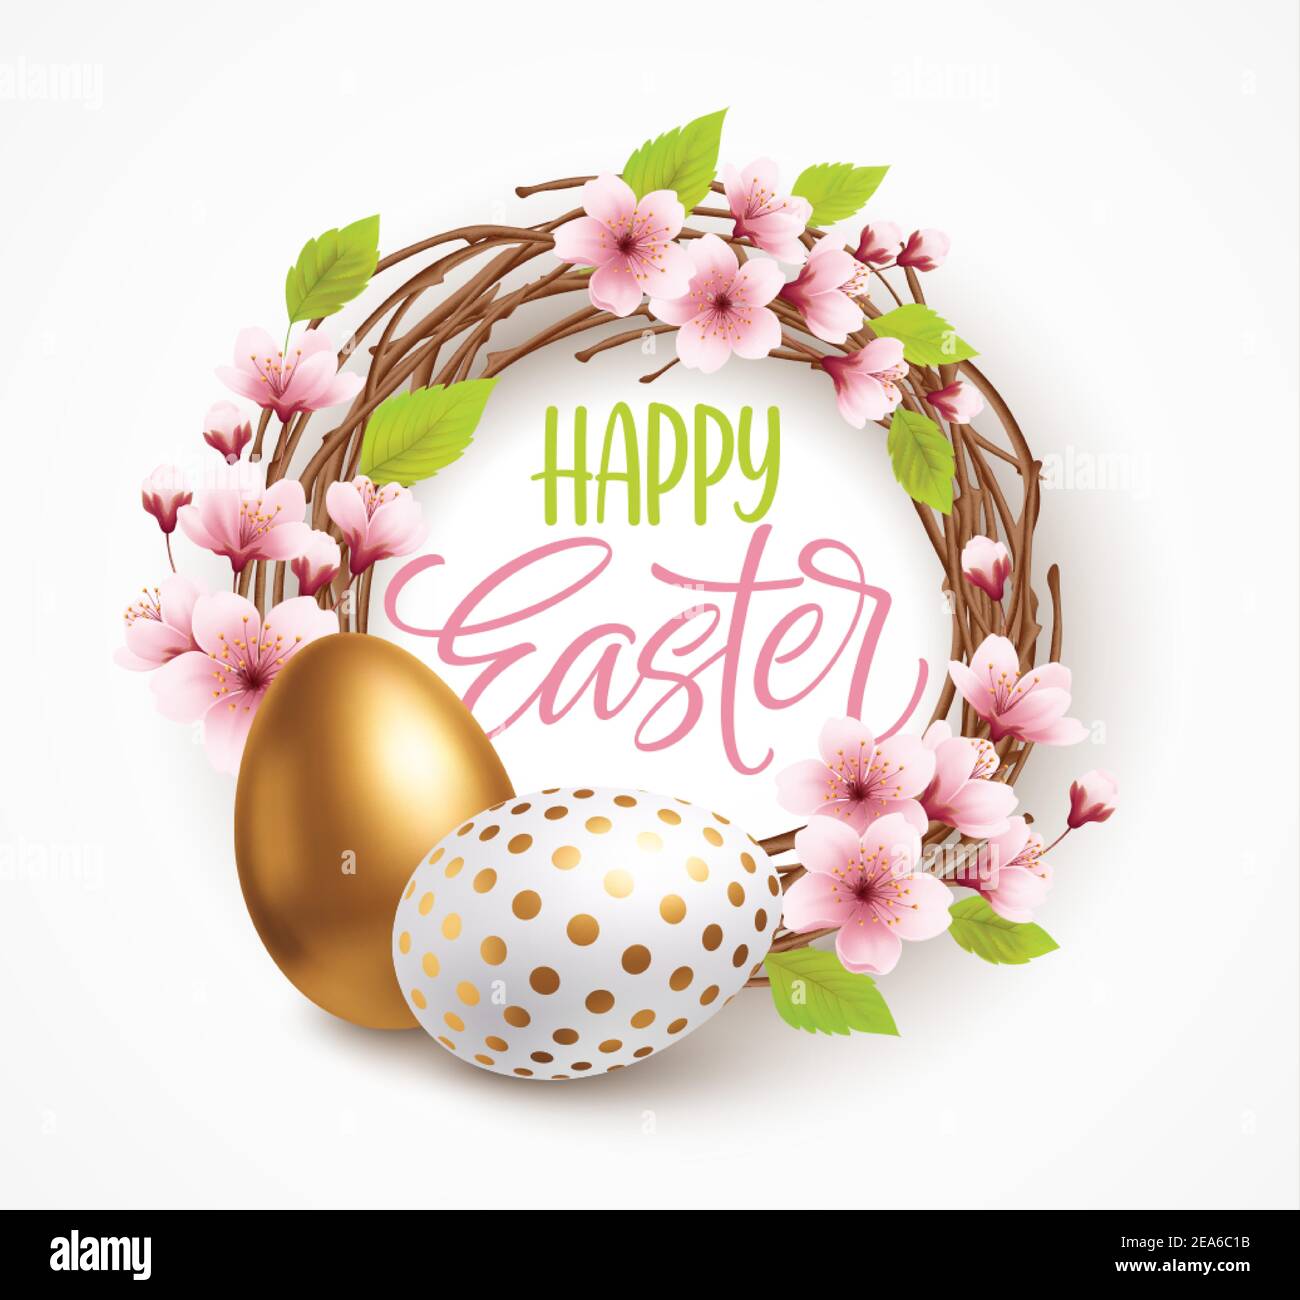 Joyeuses Pâques saluant le fond avec des œufs de Pâques réalistes dans une couronne avec des fleurs de printemps. Illustration vectorielle Illustration de Vecteur